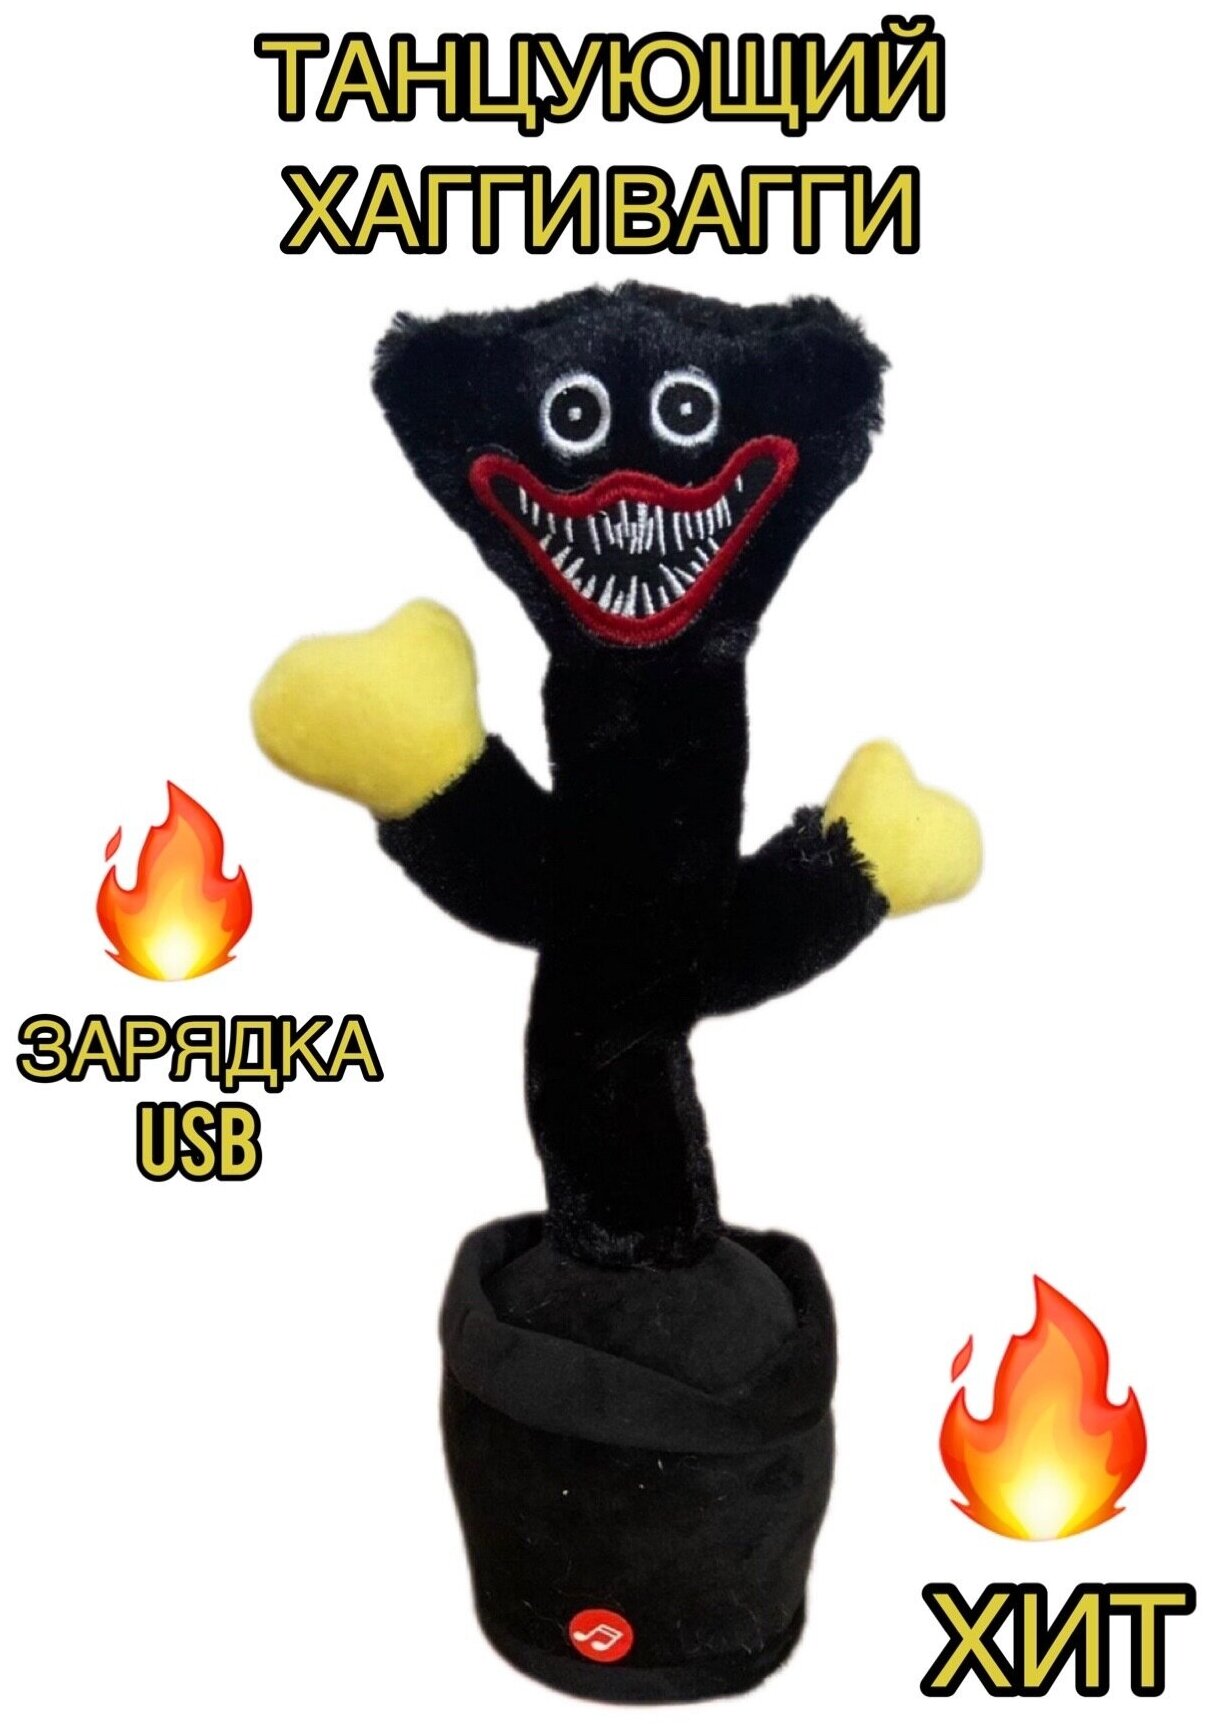 Танцующий хаги ваги черный / Музыкальная игрушка повторюшка поющий кактус хагги вагги черный